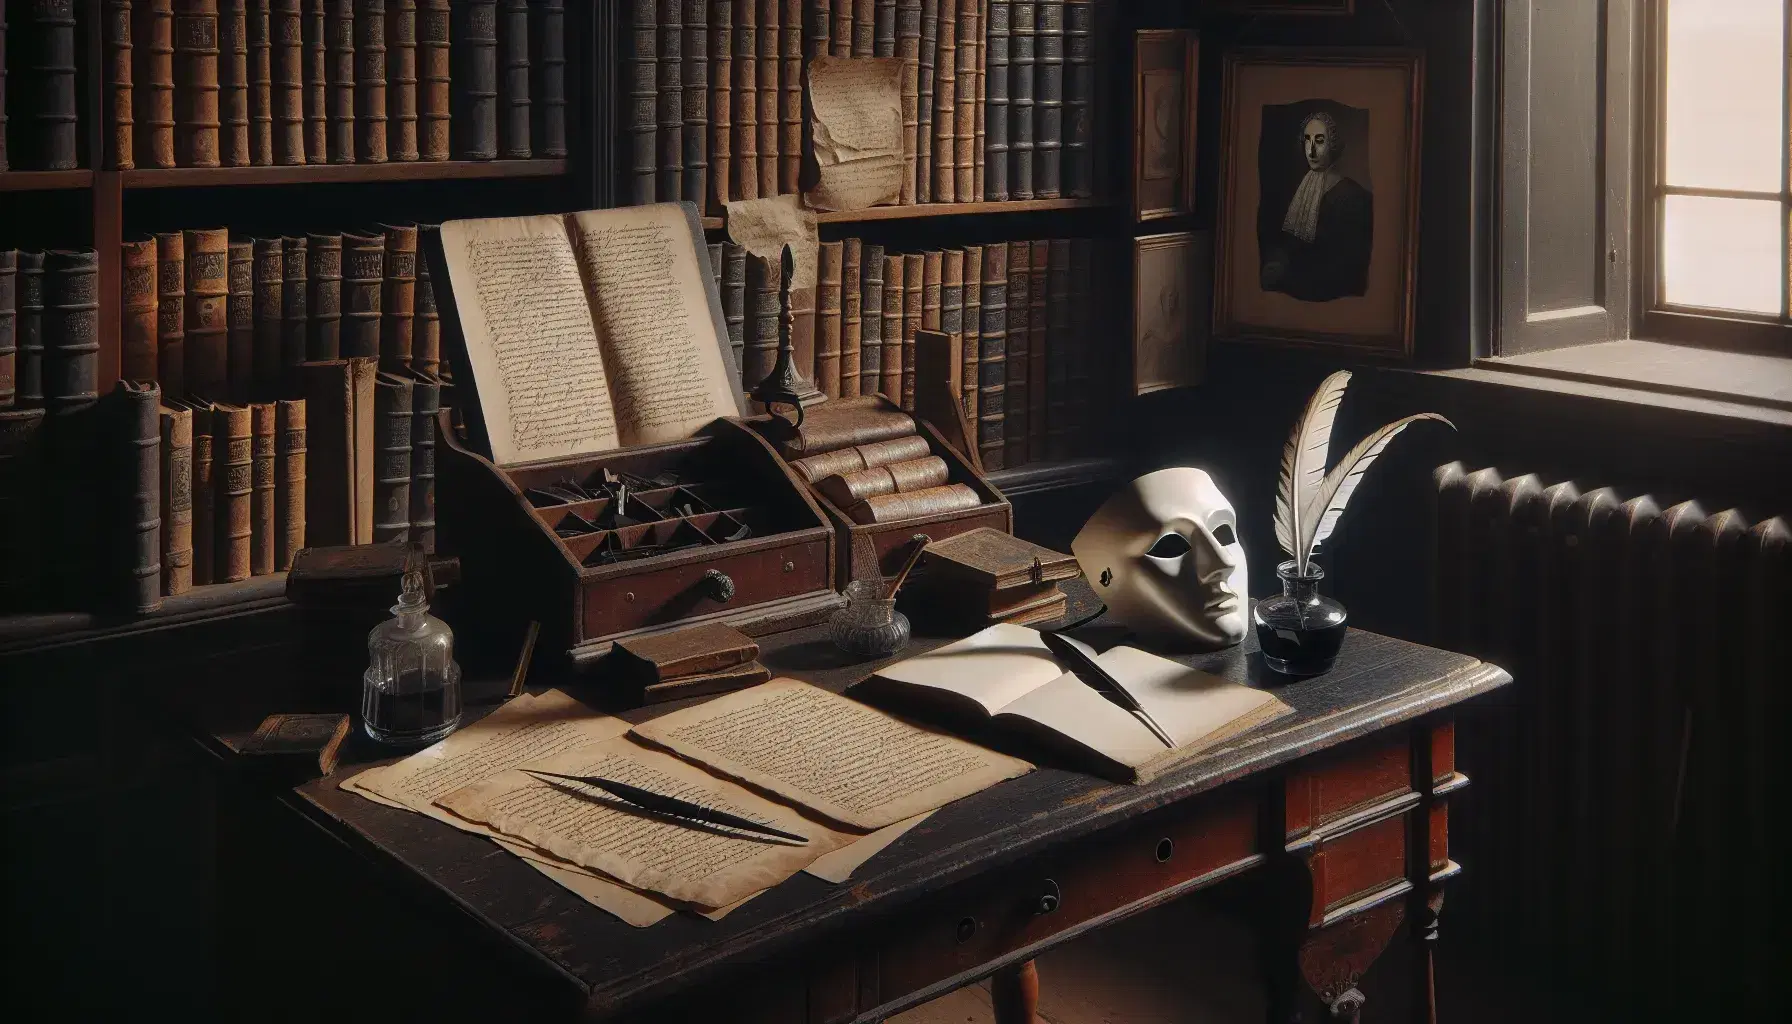 Scrivania in legno scuro con piuma, calamaio, carta ingiallita, libro aperto e maschera teatrale greca, in una biblioteca antica illuminata naturalmente.